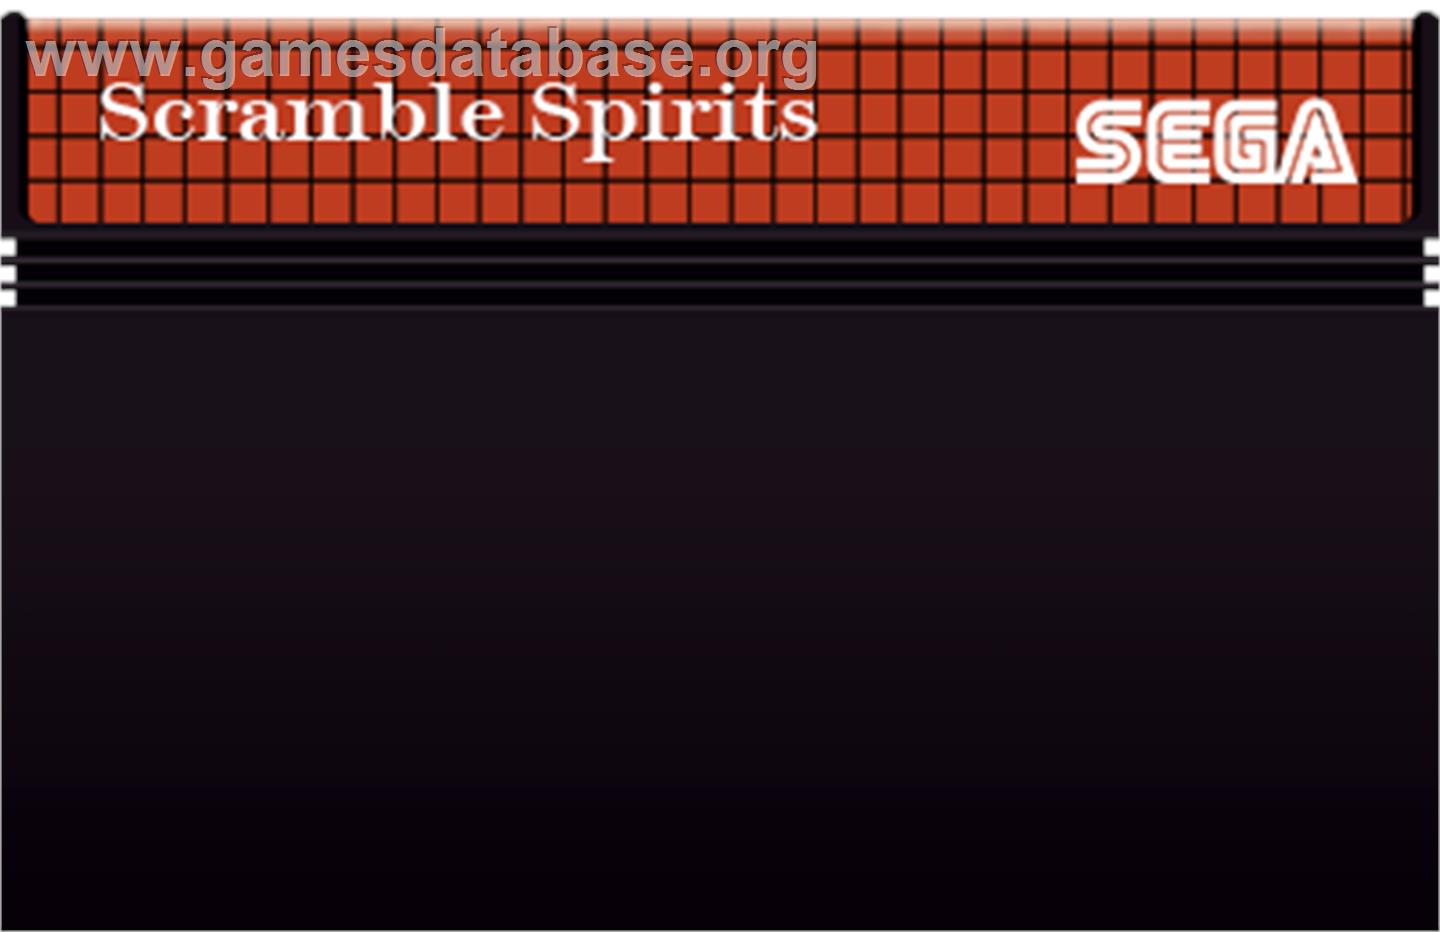 Scramble Spirits - Sega Master System - Artwork - Cartridge